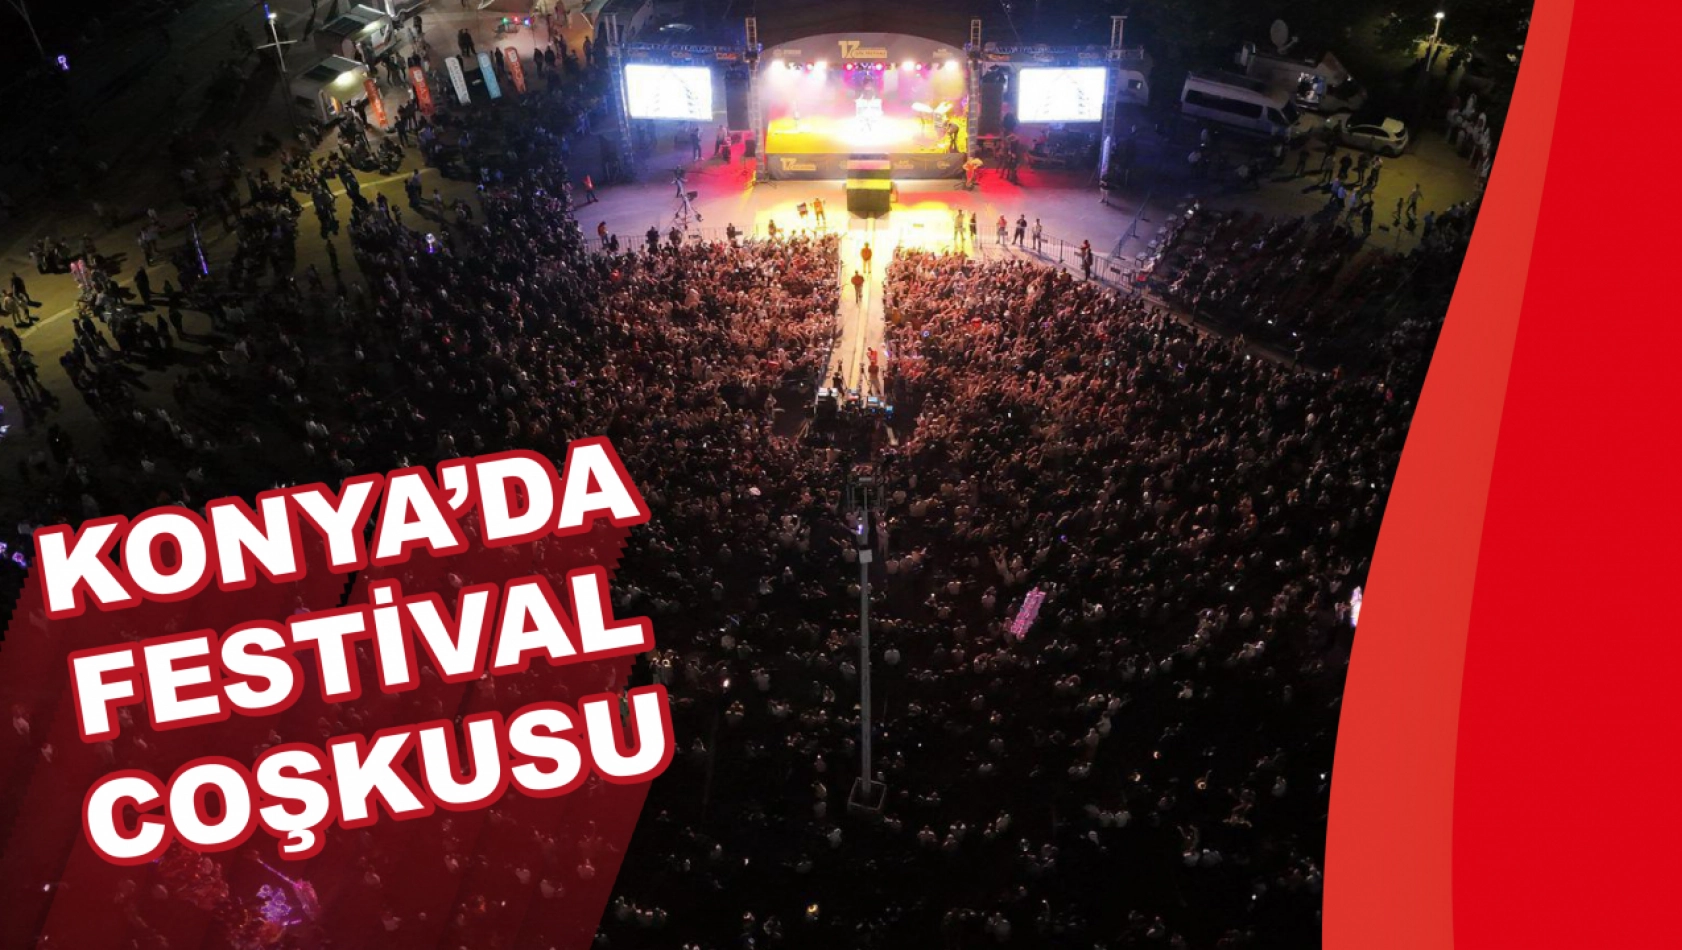 Konya'da Festival Coşkusu: Ekin Uzunlar Sahne Aldı